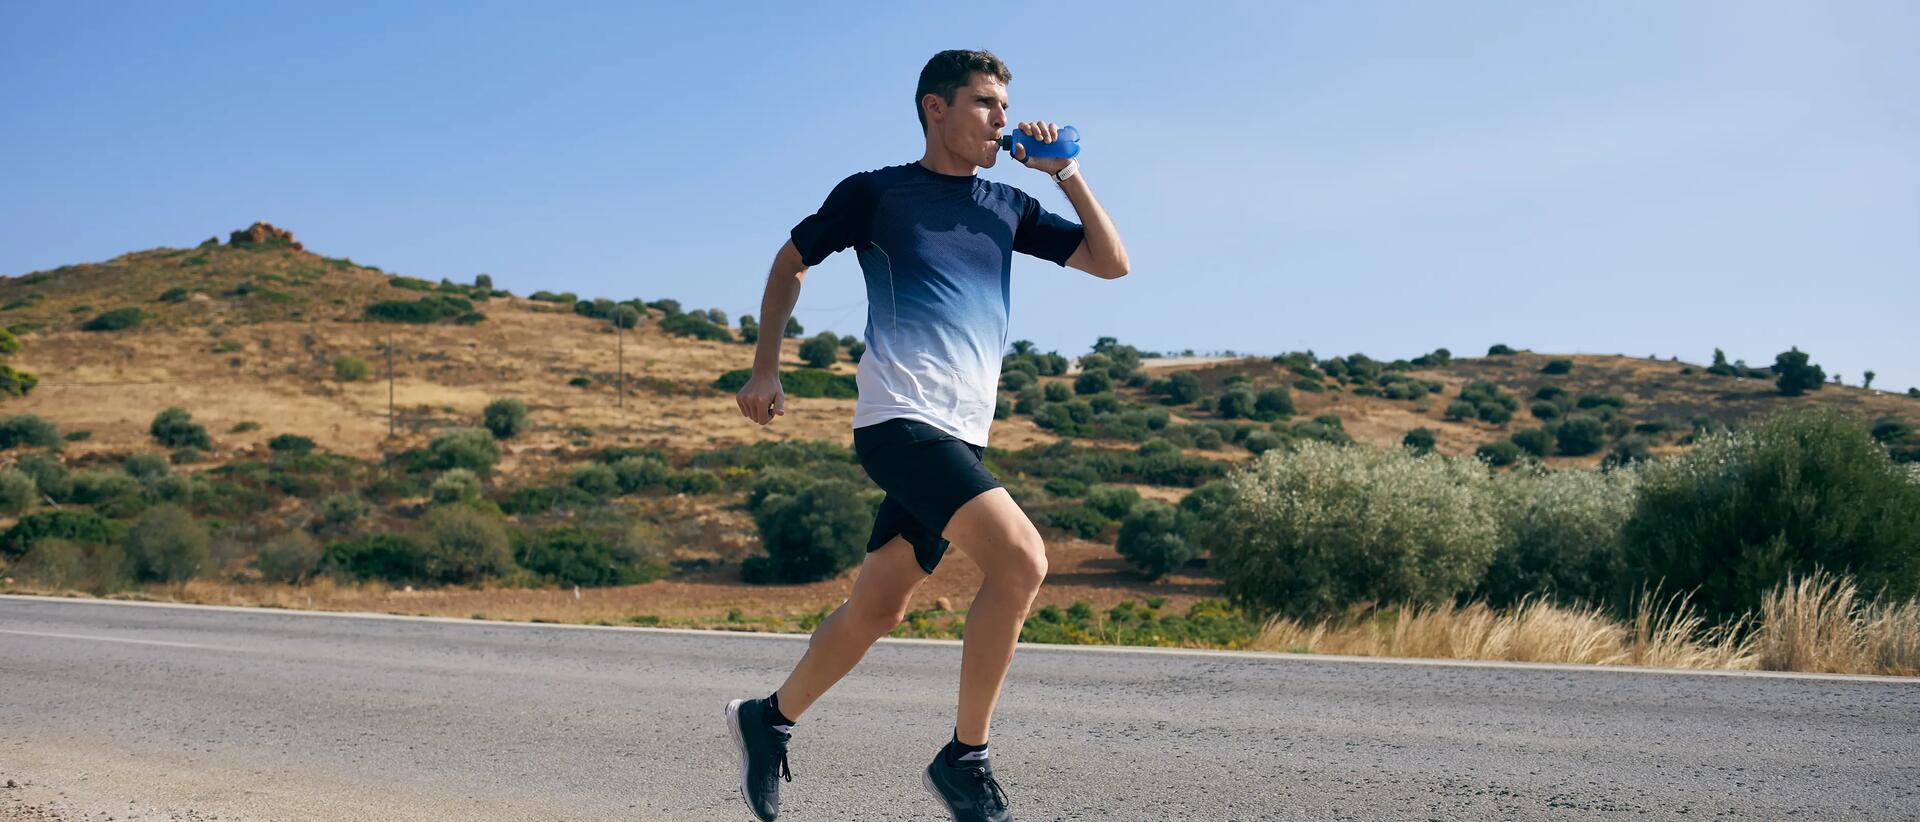 mężczyzna pijący wodę z bidonu biegnąc po drodze